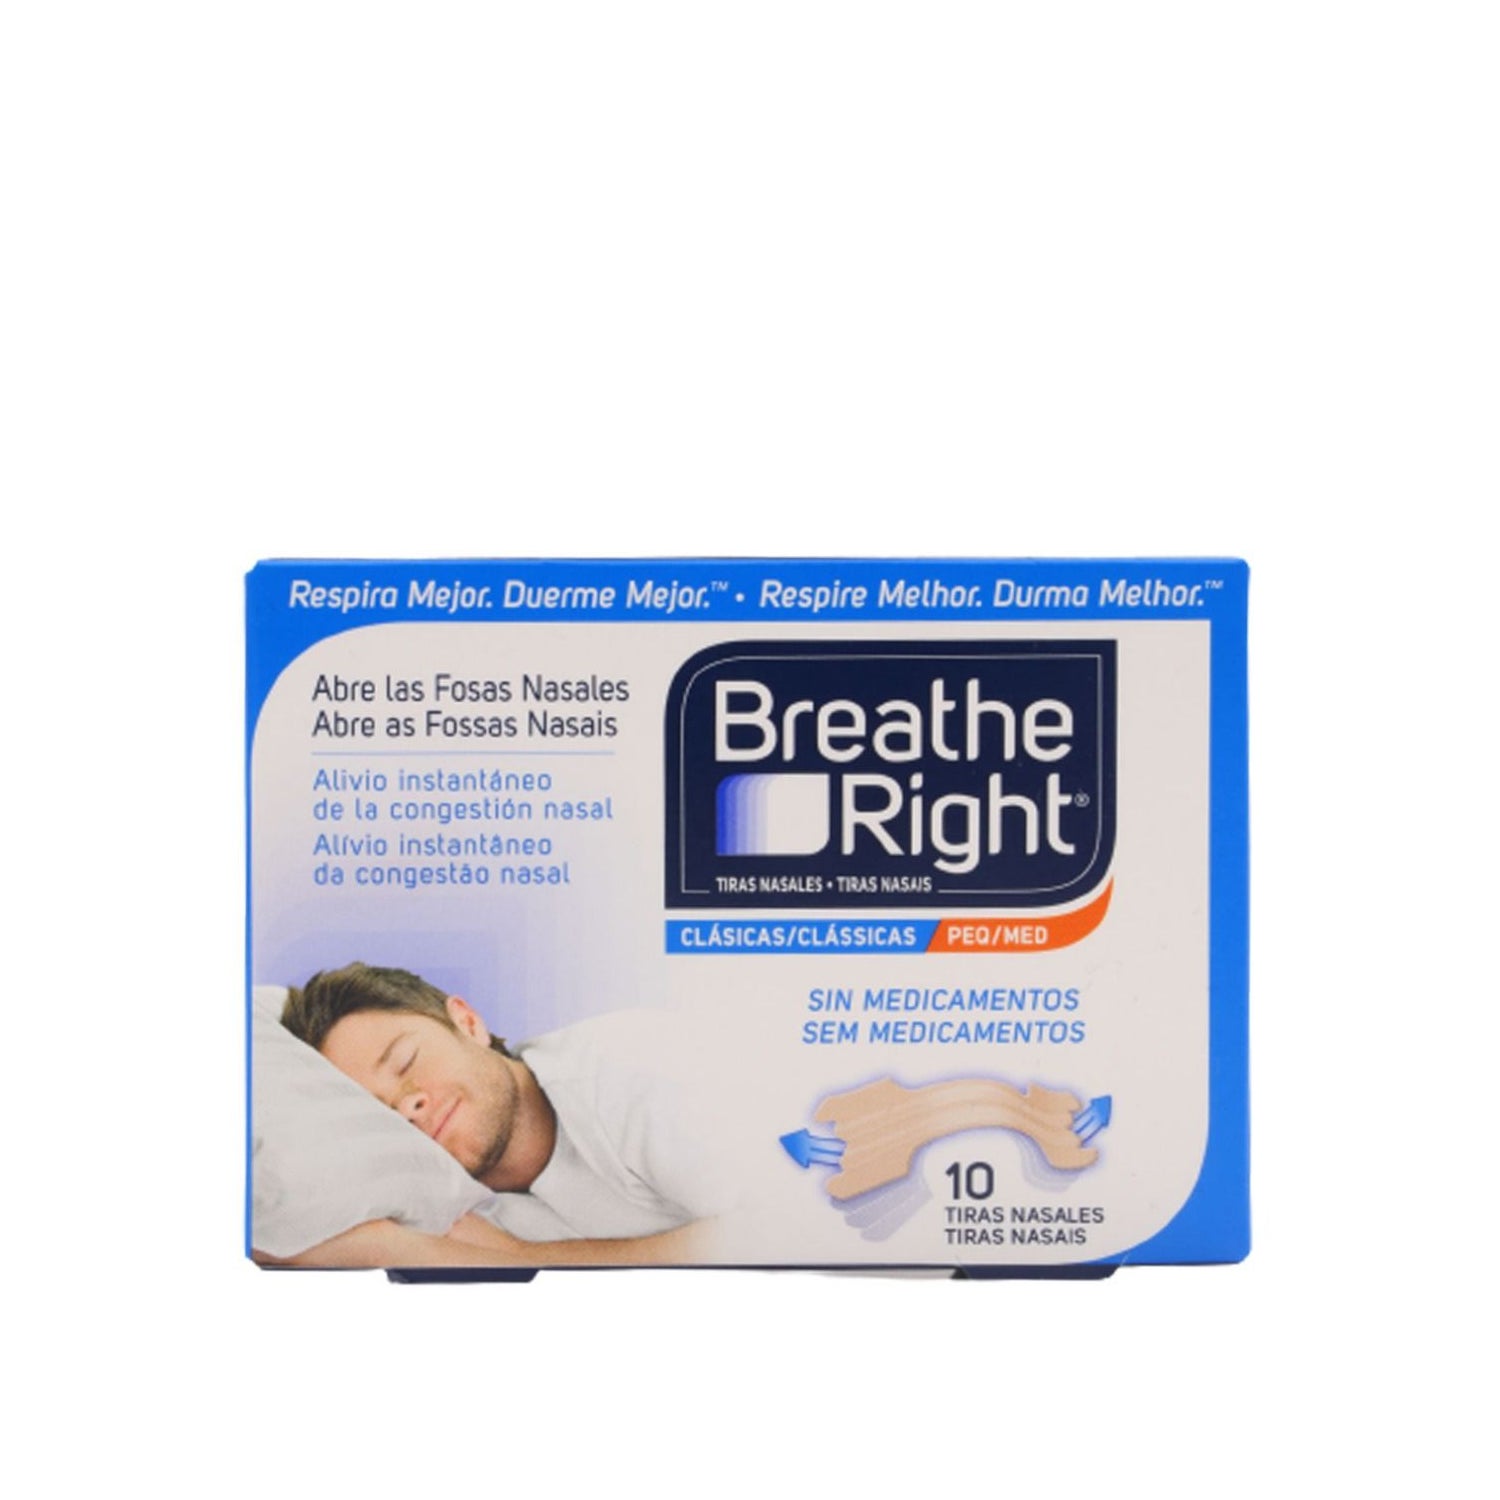 30 TIRAS NASALES.Tiras nasales de calidad profesional. Respirar Mejor! –